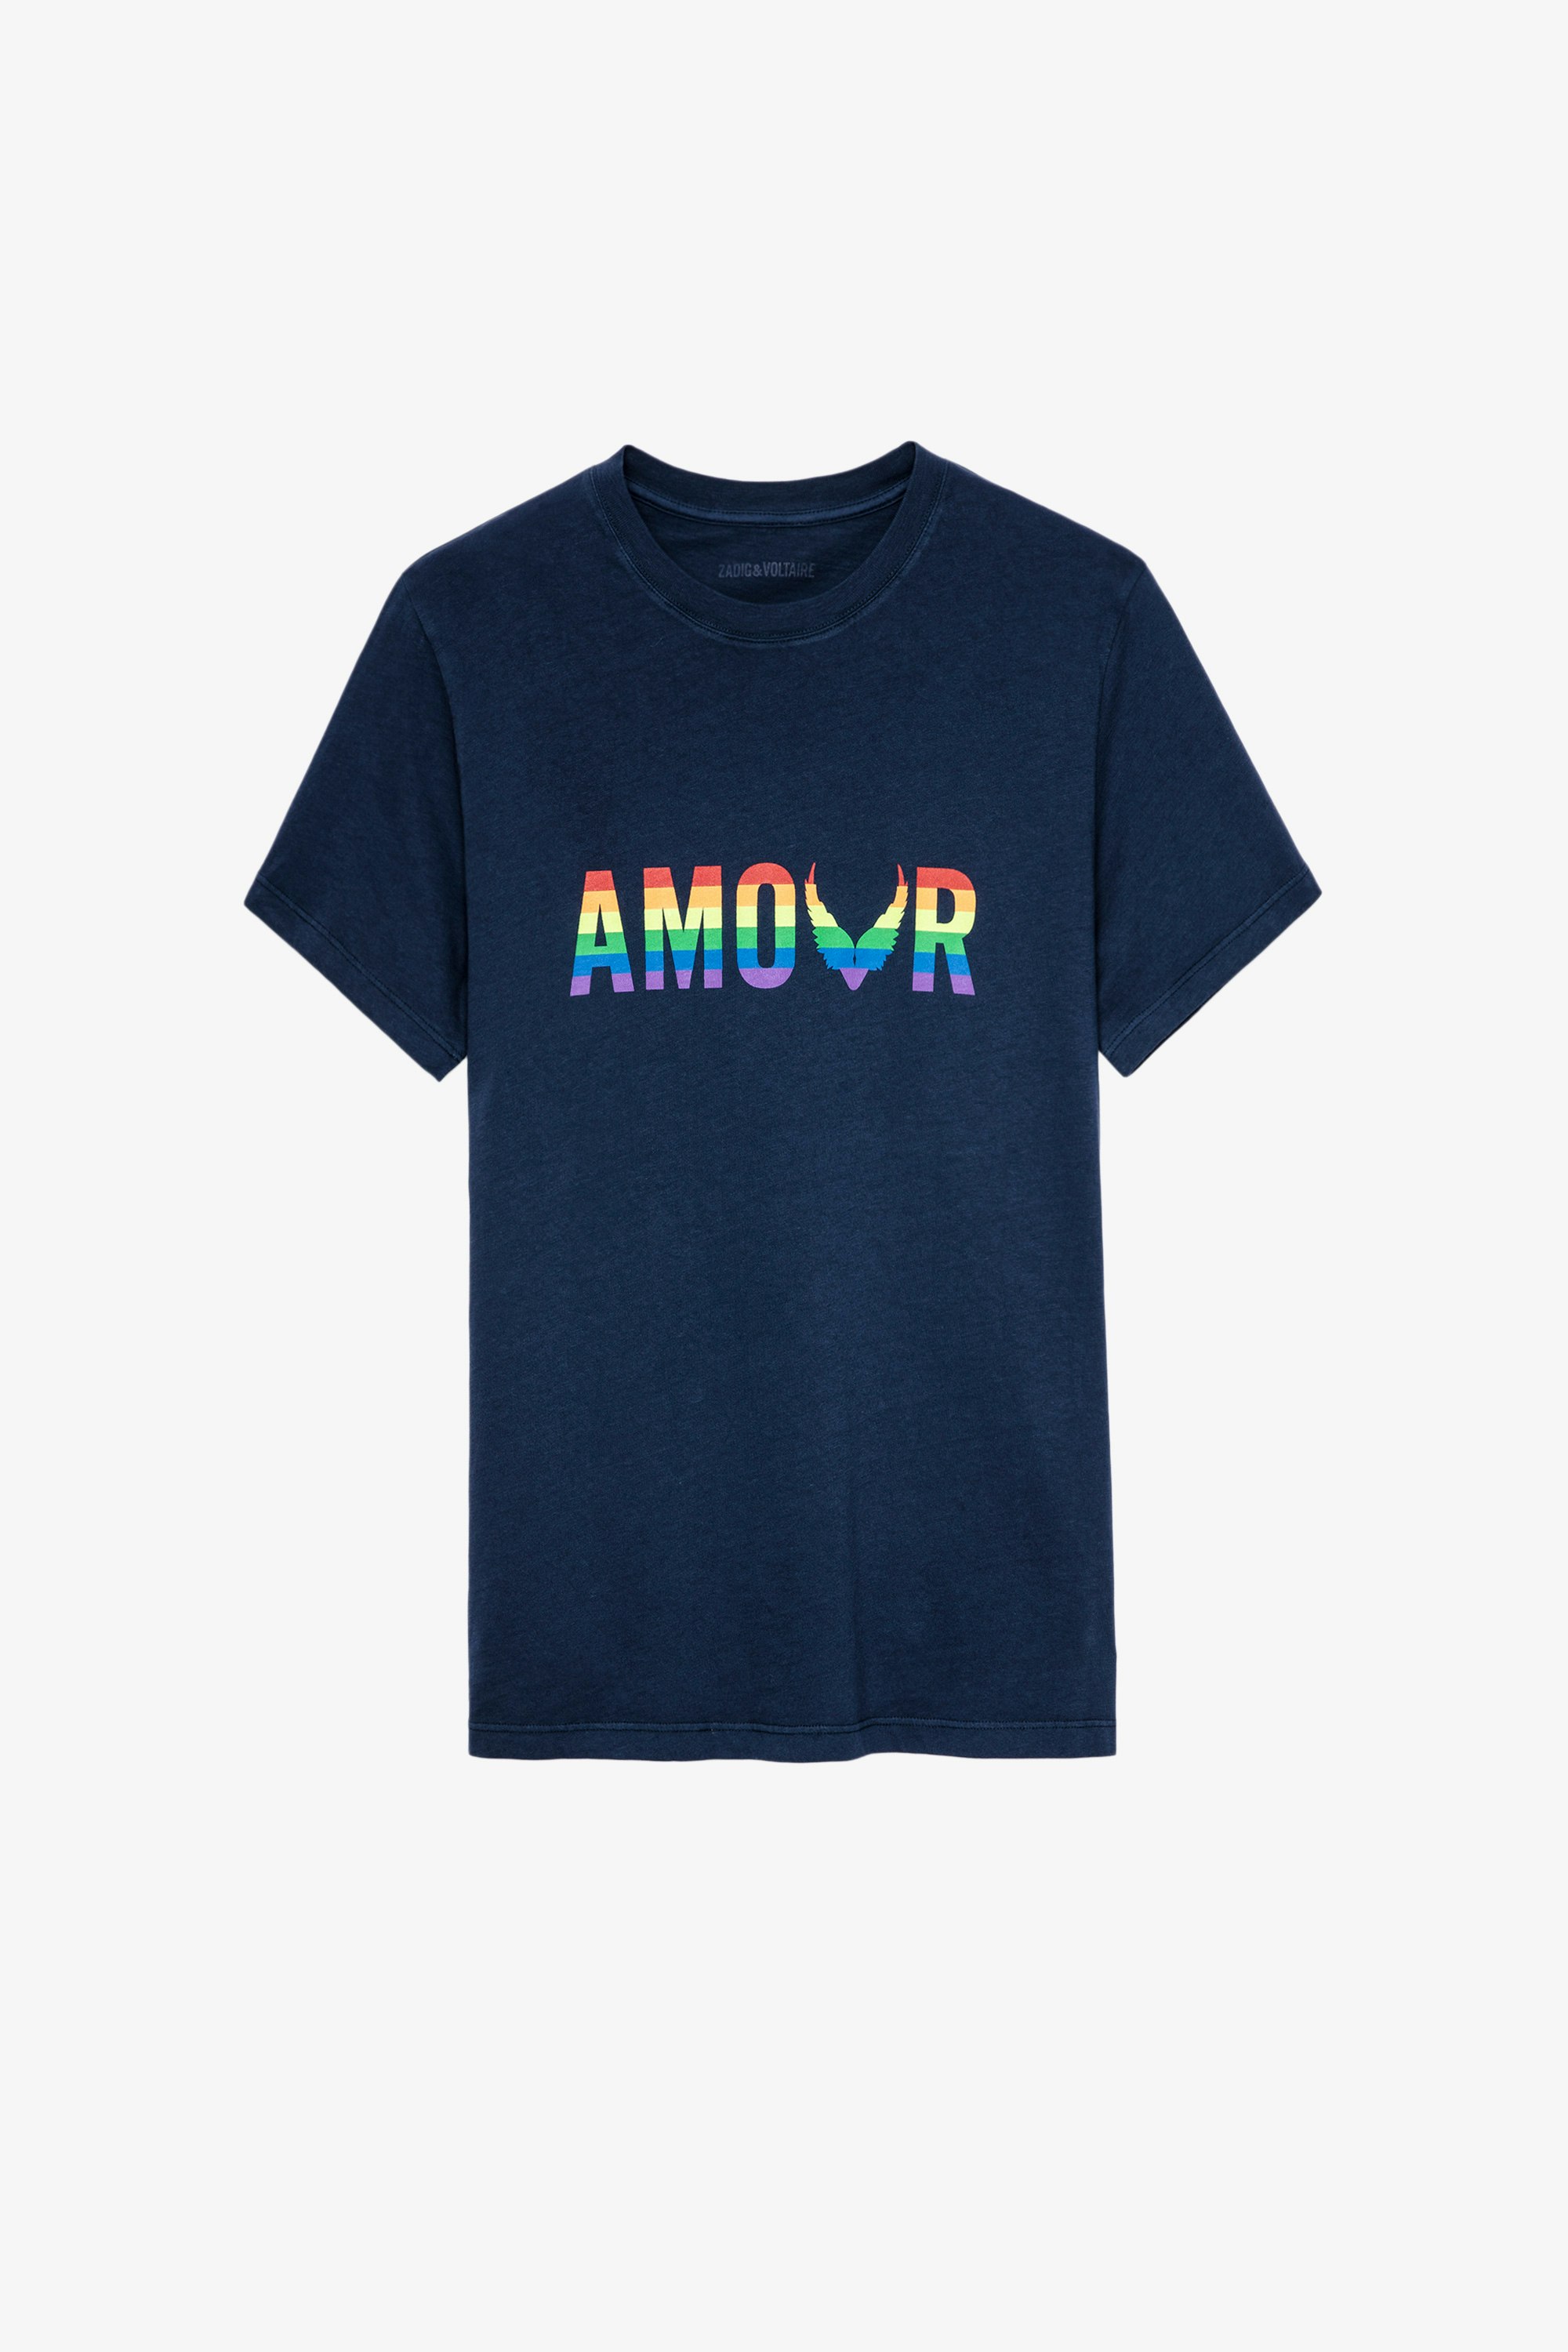 Camiseta Tommy Amour Wings Camiseta de mujer de algodón azul marino con estampado Amour multicolor